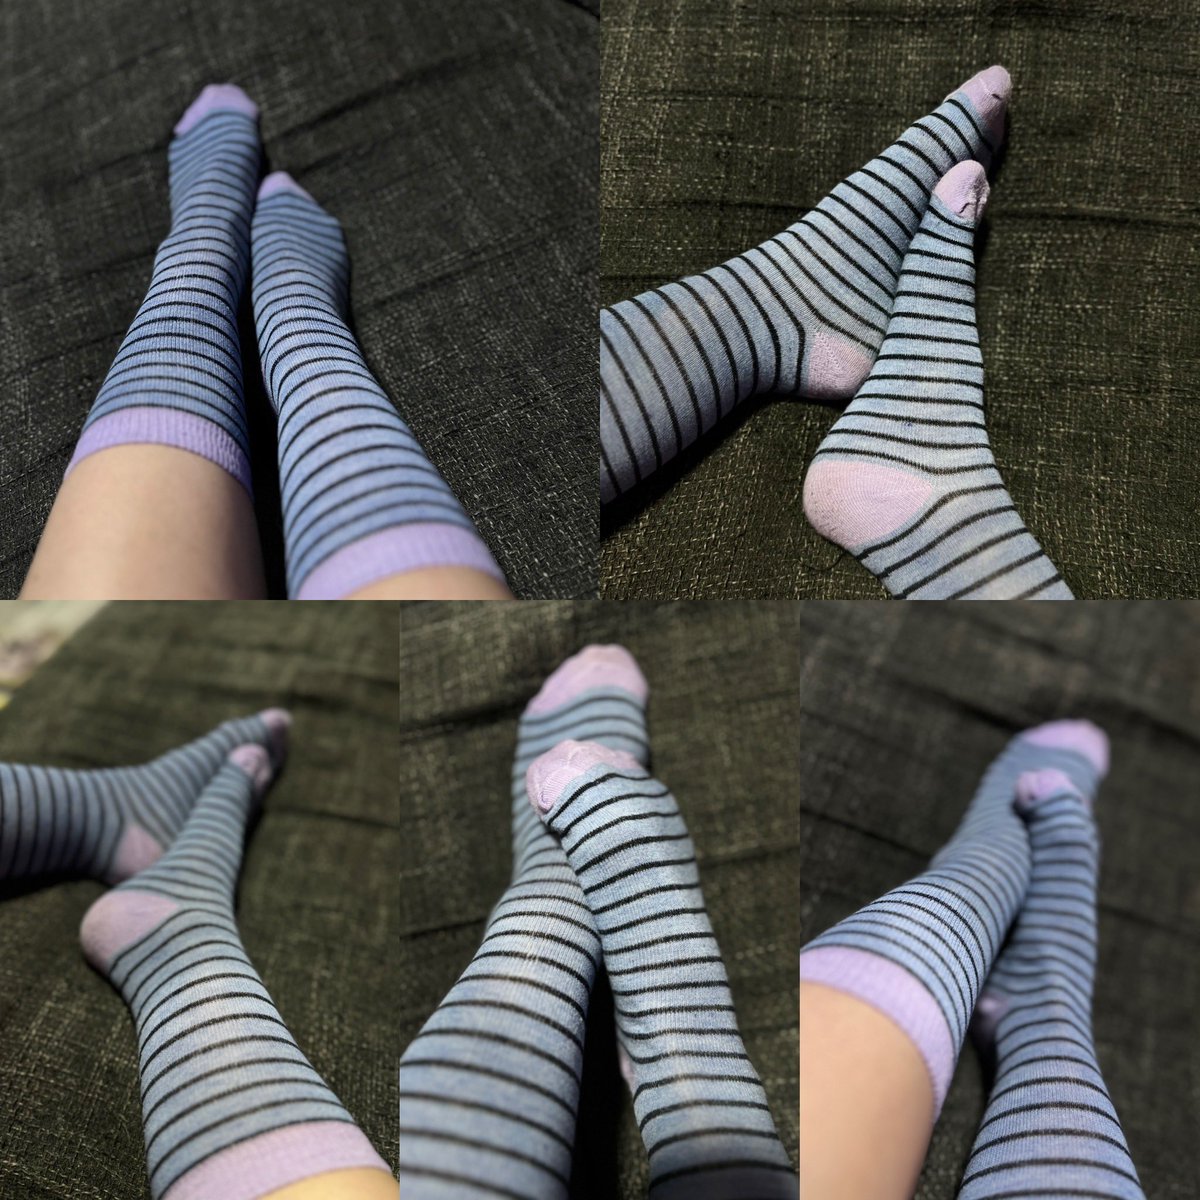 Meine neuen Socken einweihen 

#socken #socks #feet #socksfetish #socksofinstagram #sockenliebe #sockslover #socksoftheday #sockenstricken #sockfetish #socksgirl #dirtysocks #stricken #cutesocks #sockstyle #sock #smellysocks #instasocks #sockswag #socklover #sockenfetish